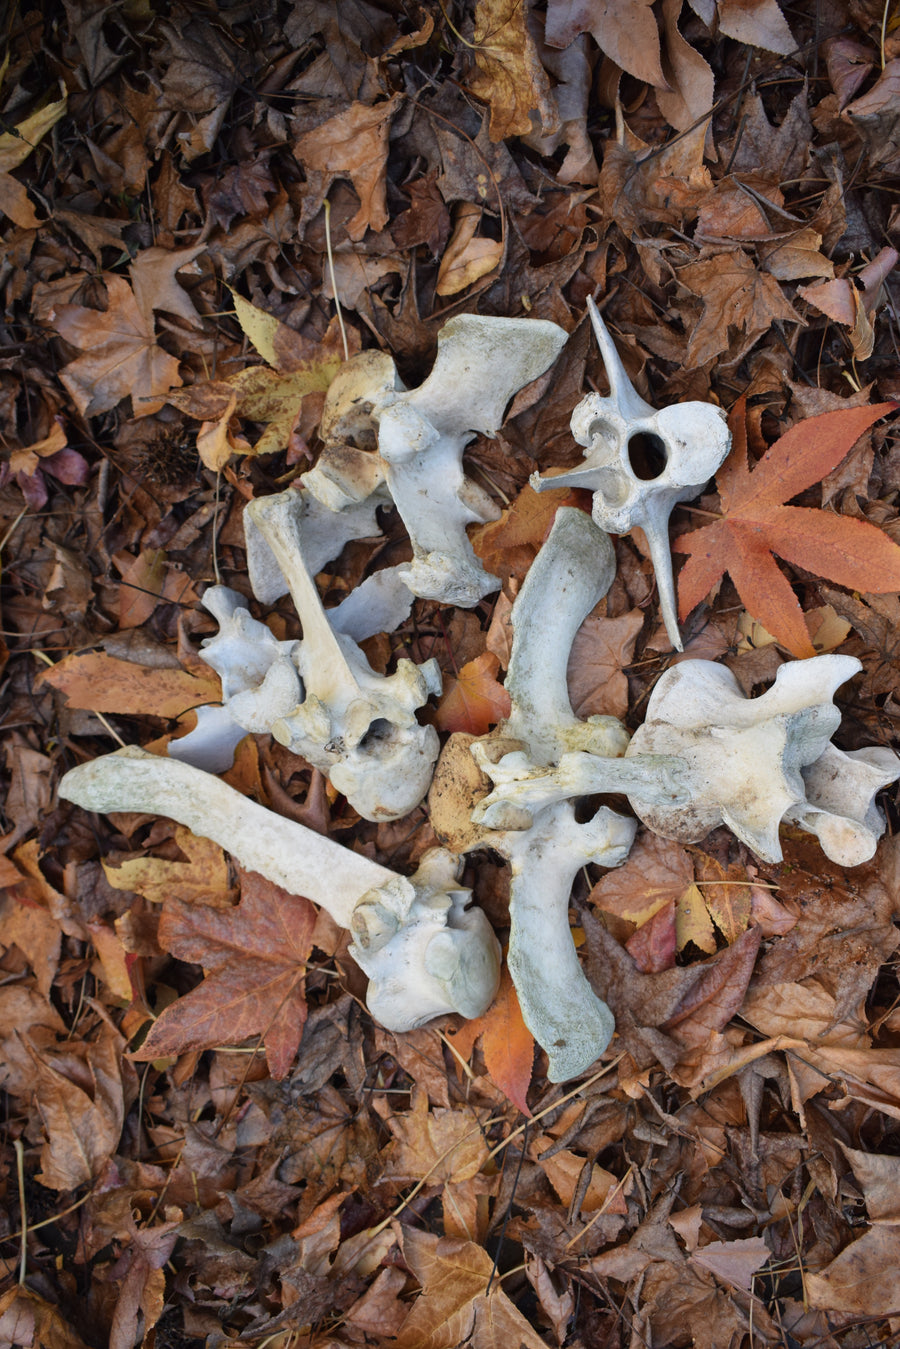 Group of real cow vertebrae bones on fallen leaves